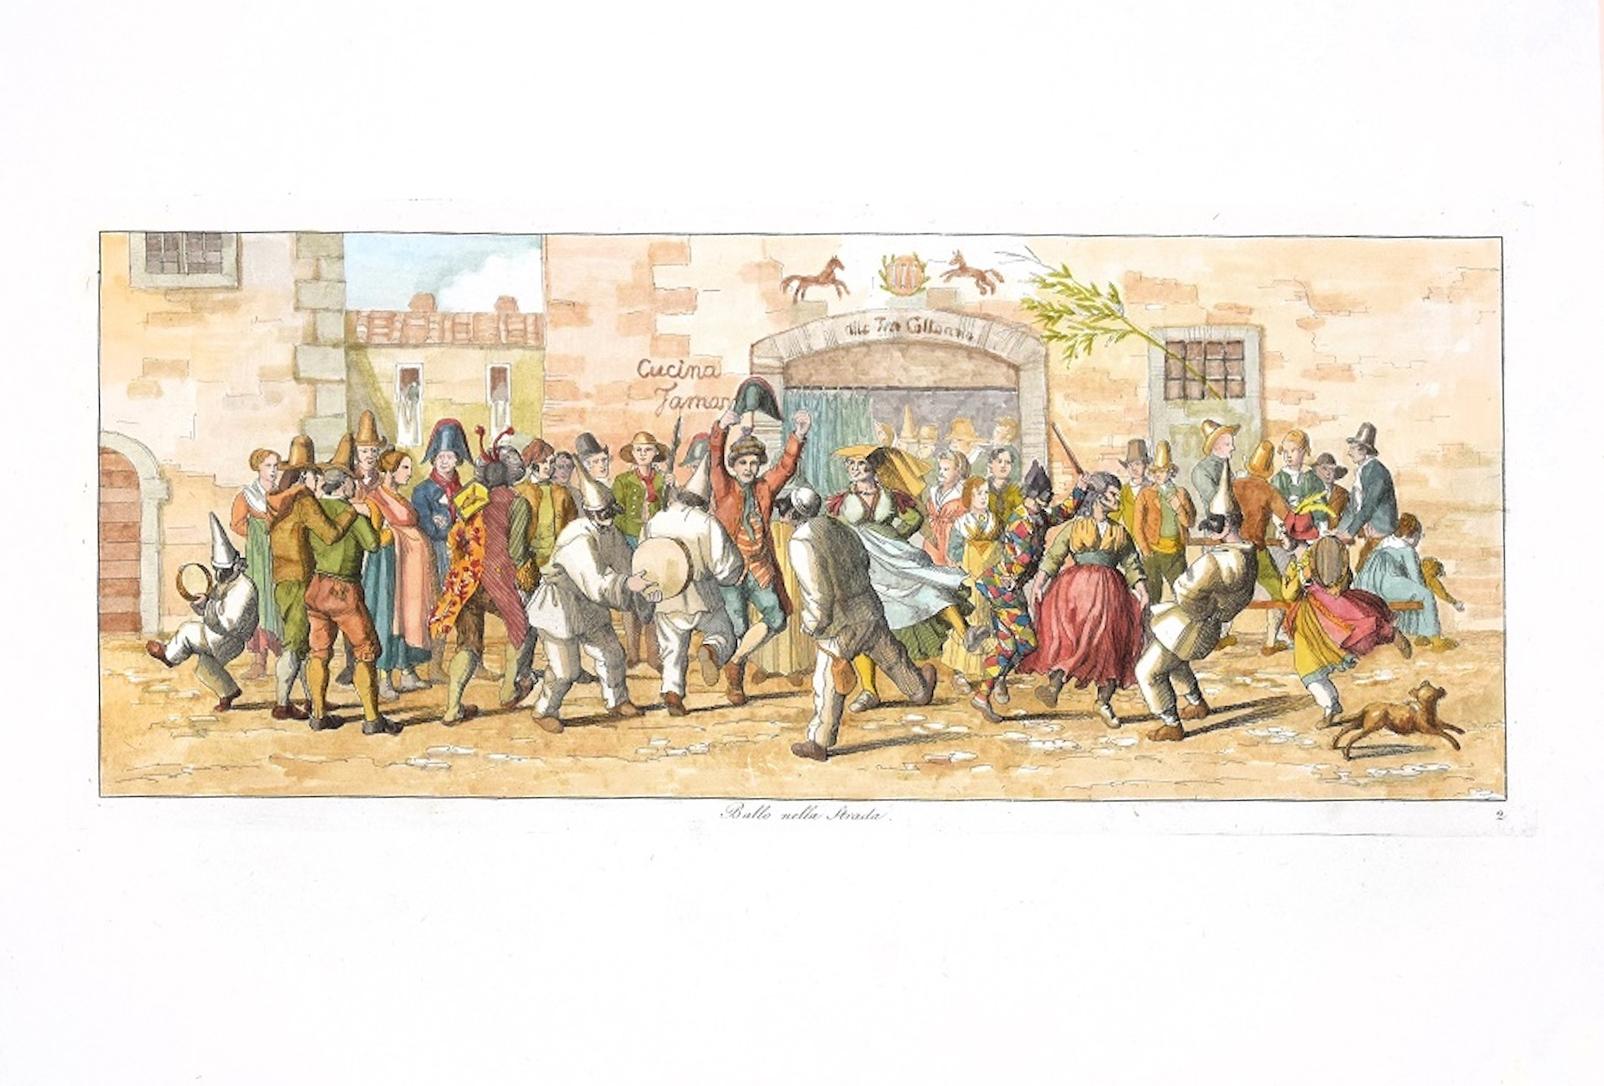 Dancing in the Street - Original Etching by C. G. Hyalmar Morner - 1820